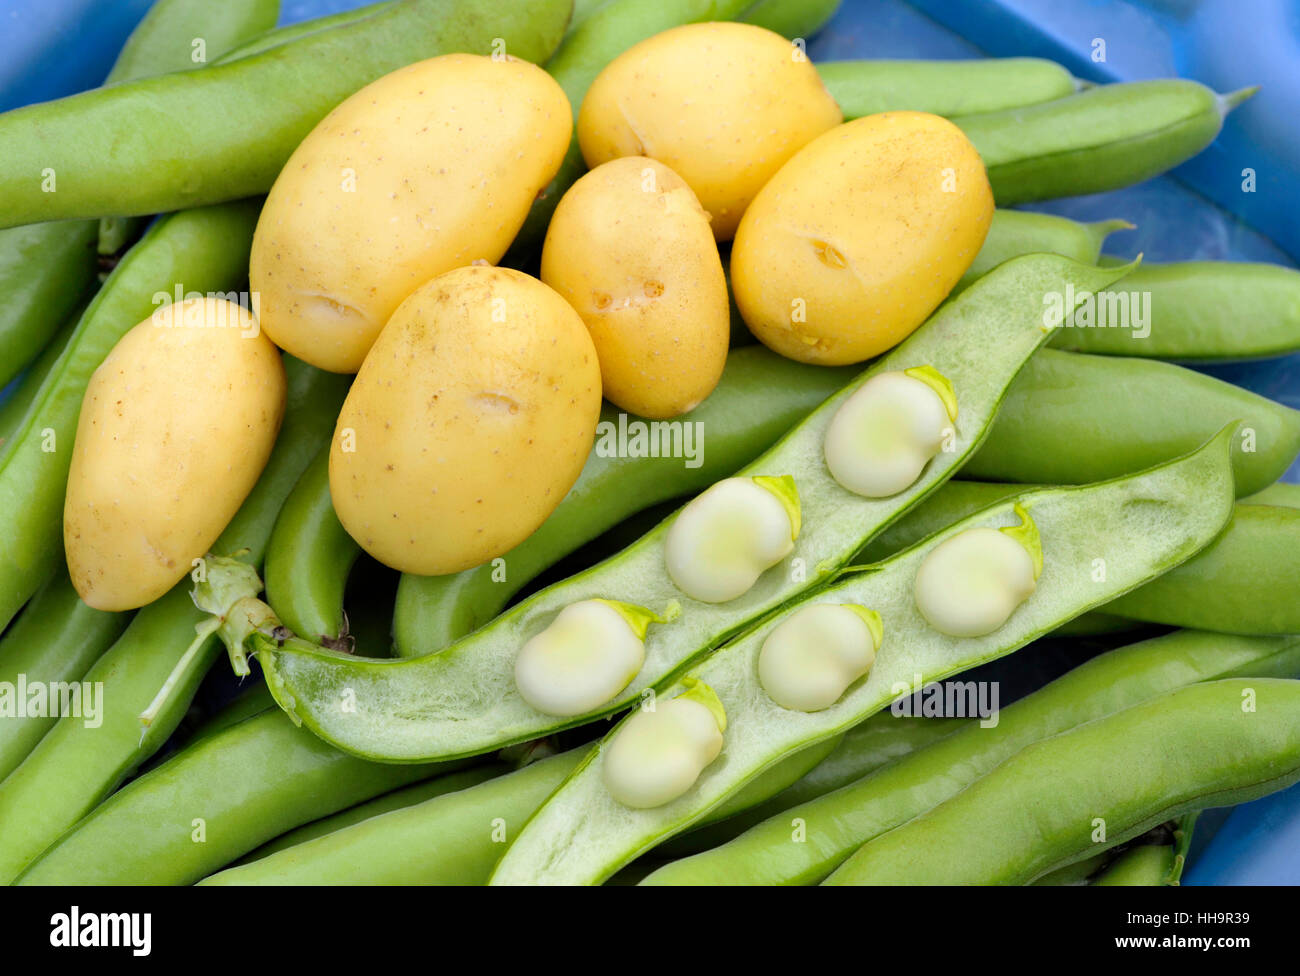 Les pommes de terre et les fèves, organique et recueillies à partir d'un potager. Salade de pommes de terre type Charlotte variétés et Witkiem Manita les haricots. Banque D'Images